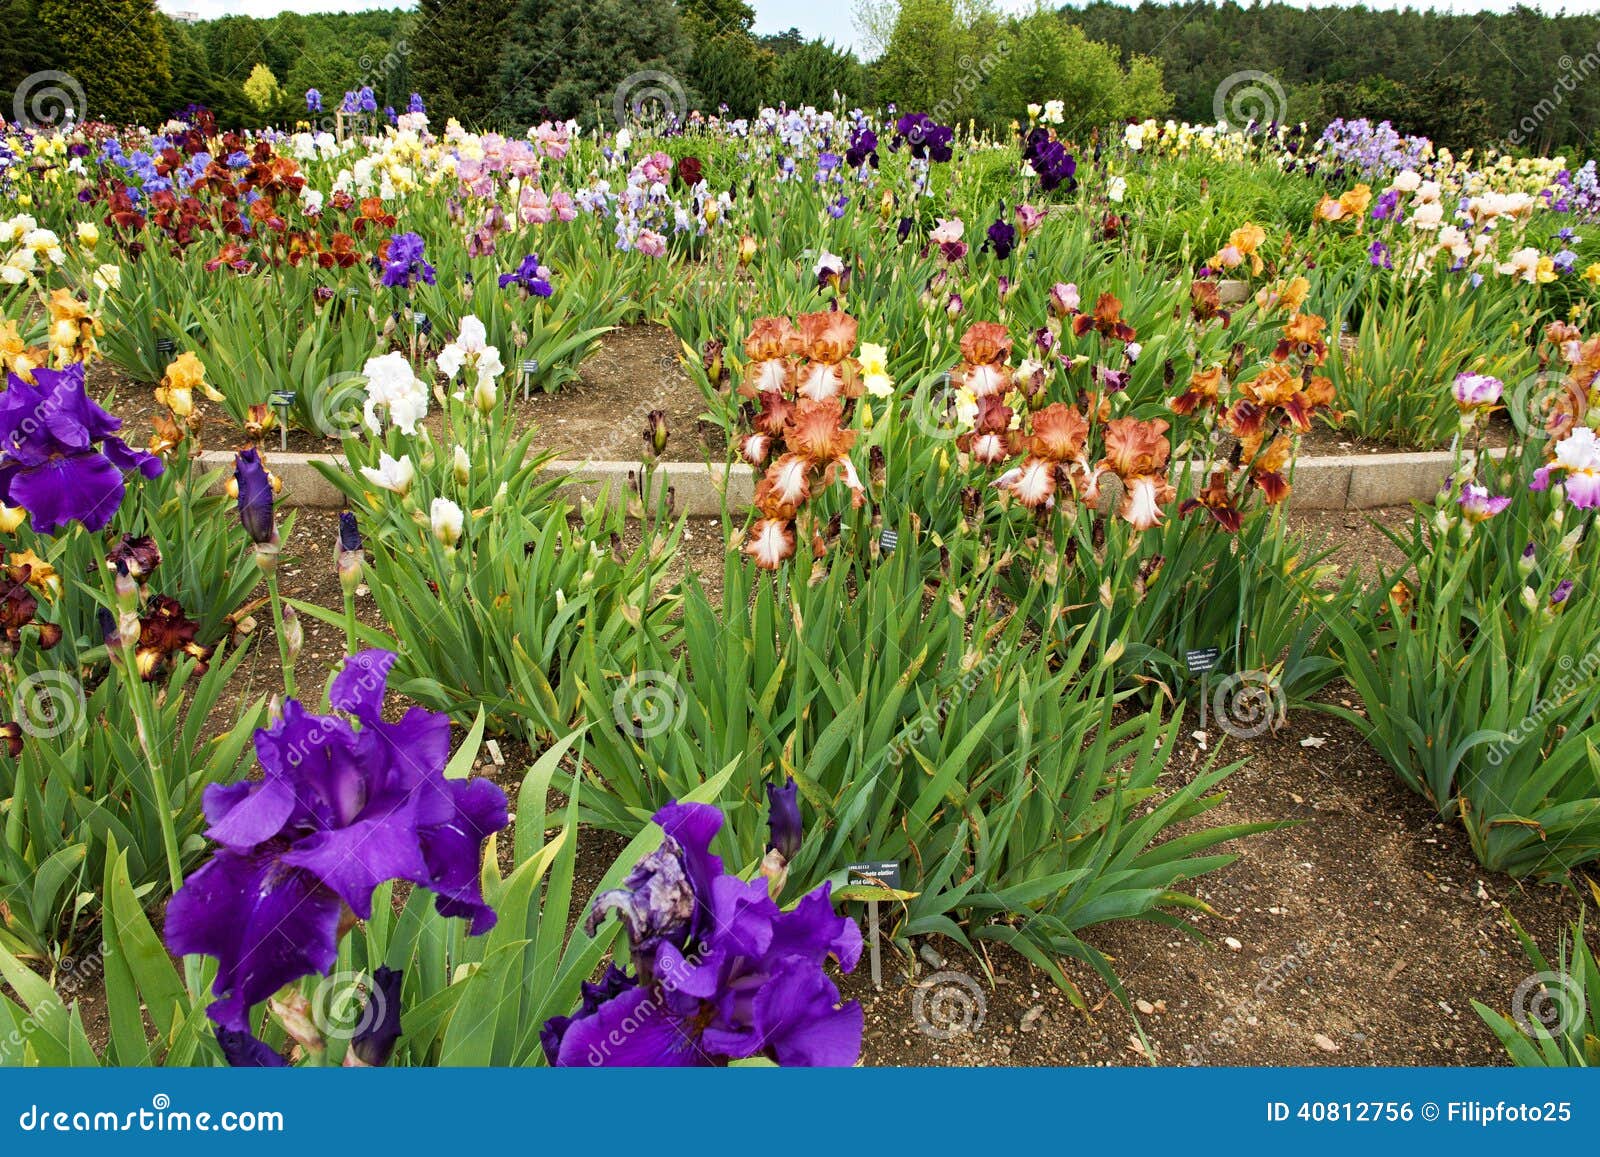 Beds of irises stock photo. Image of botanical, irises - 40812756